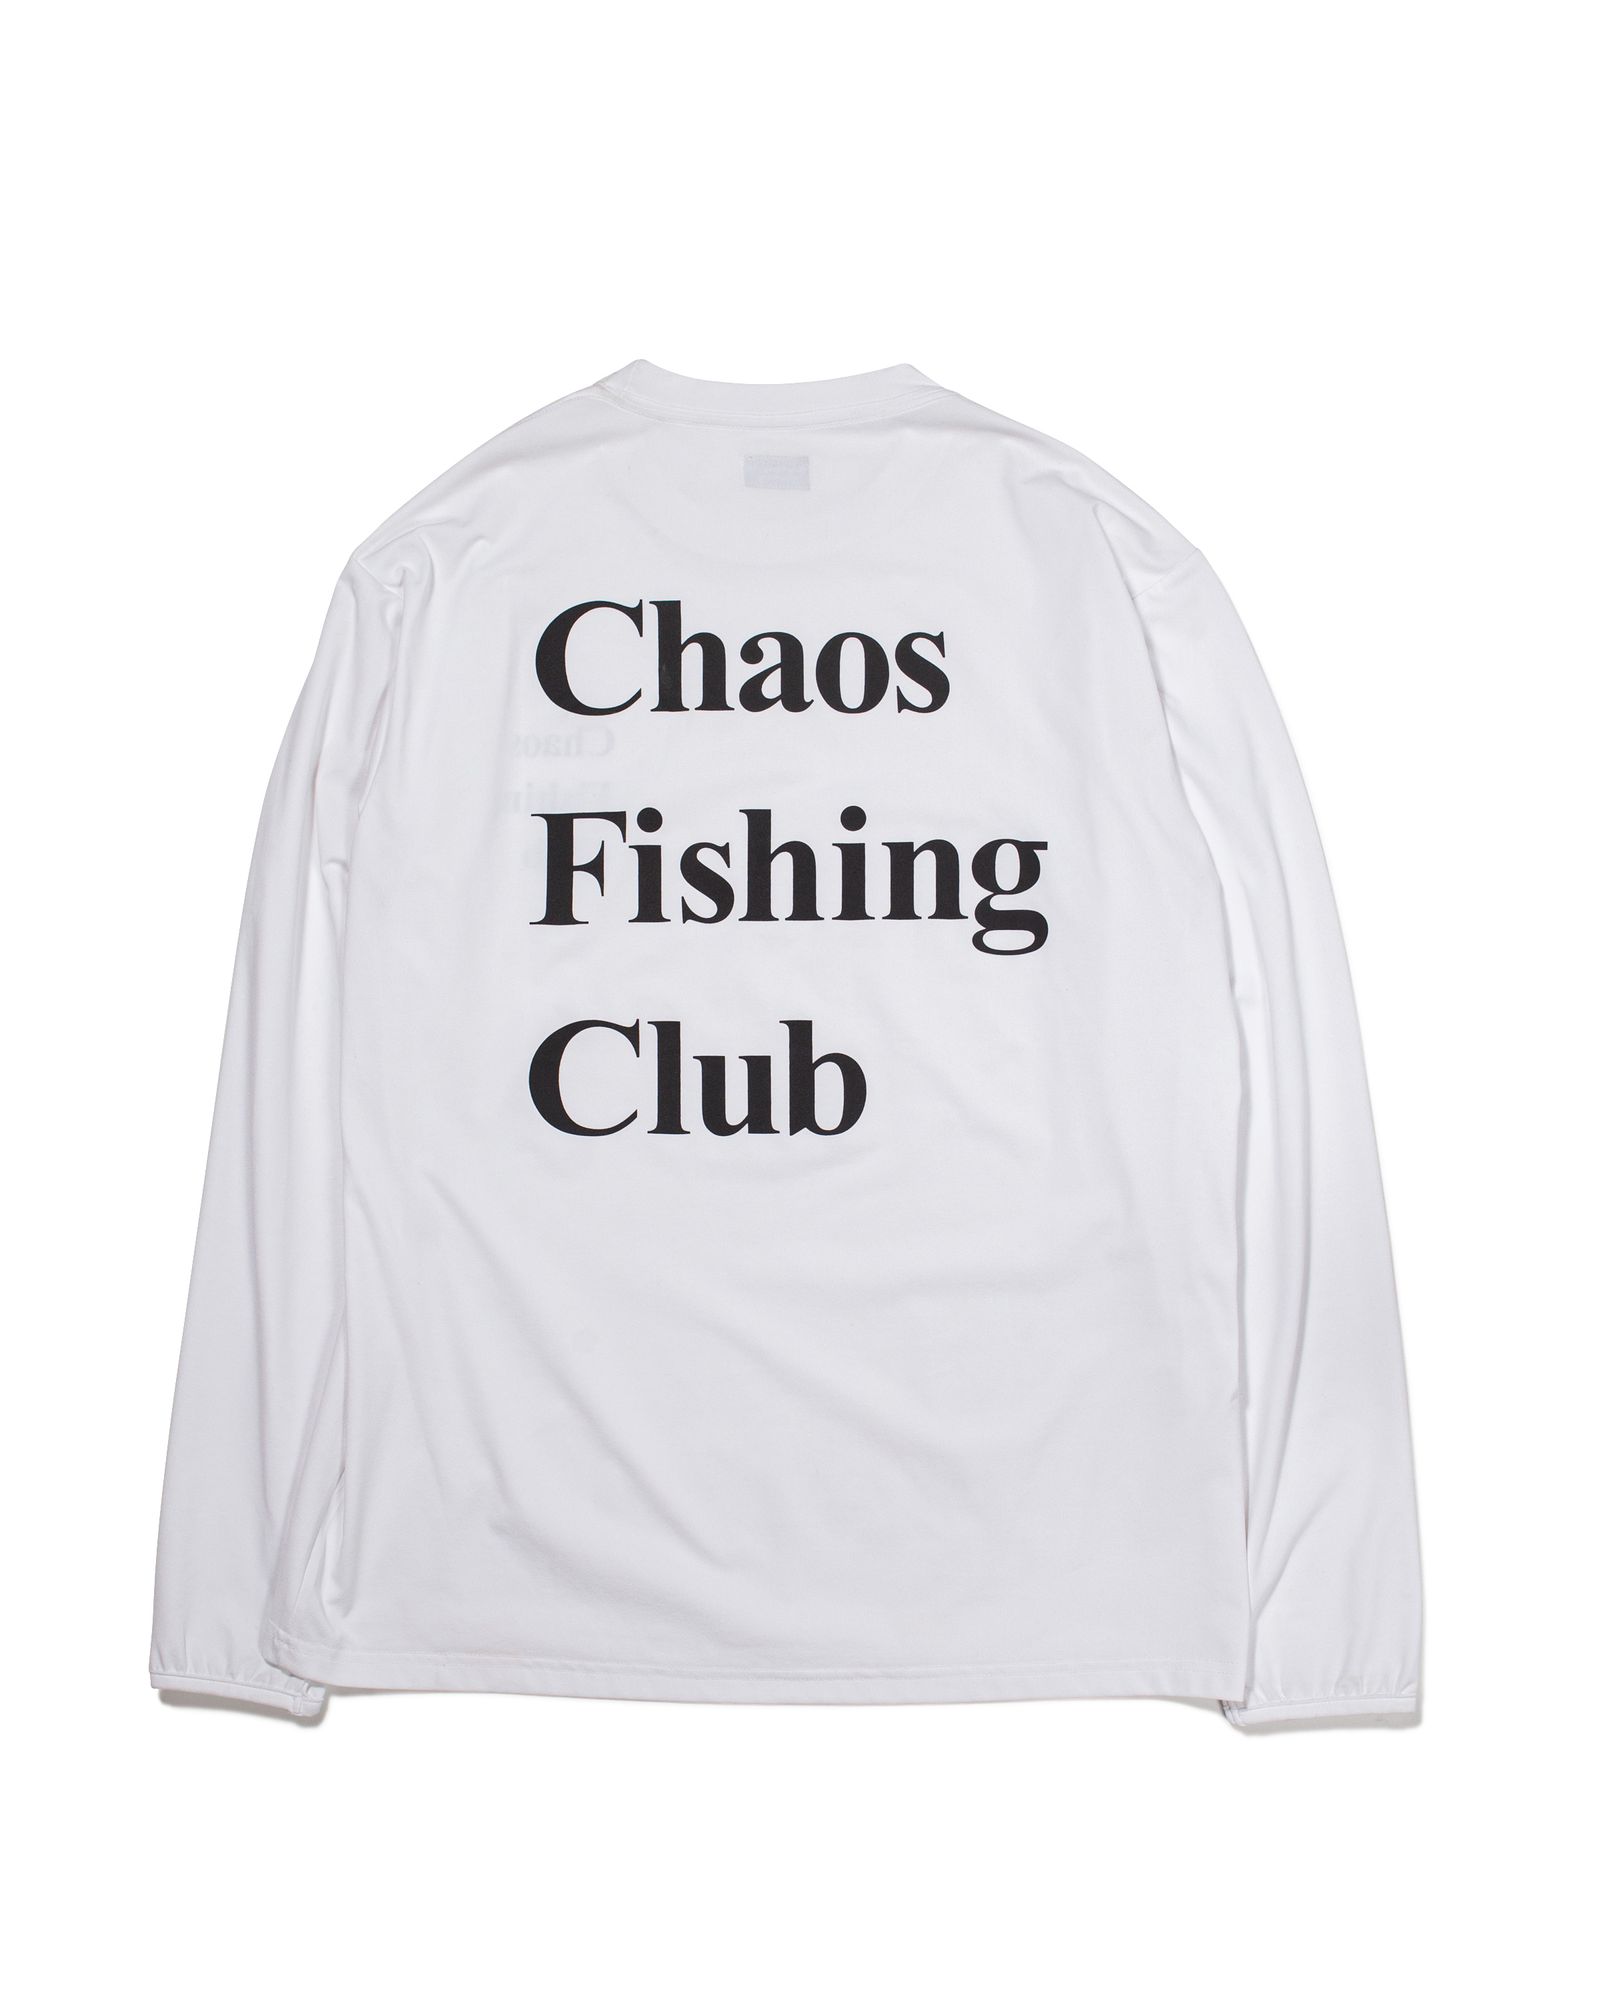 Chaos Fishing Club ダウンジャケット/ダウンベスト M